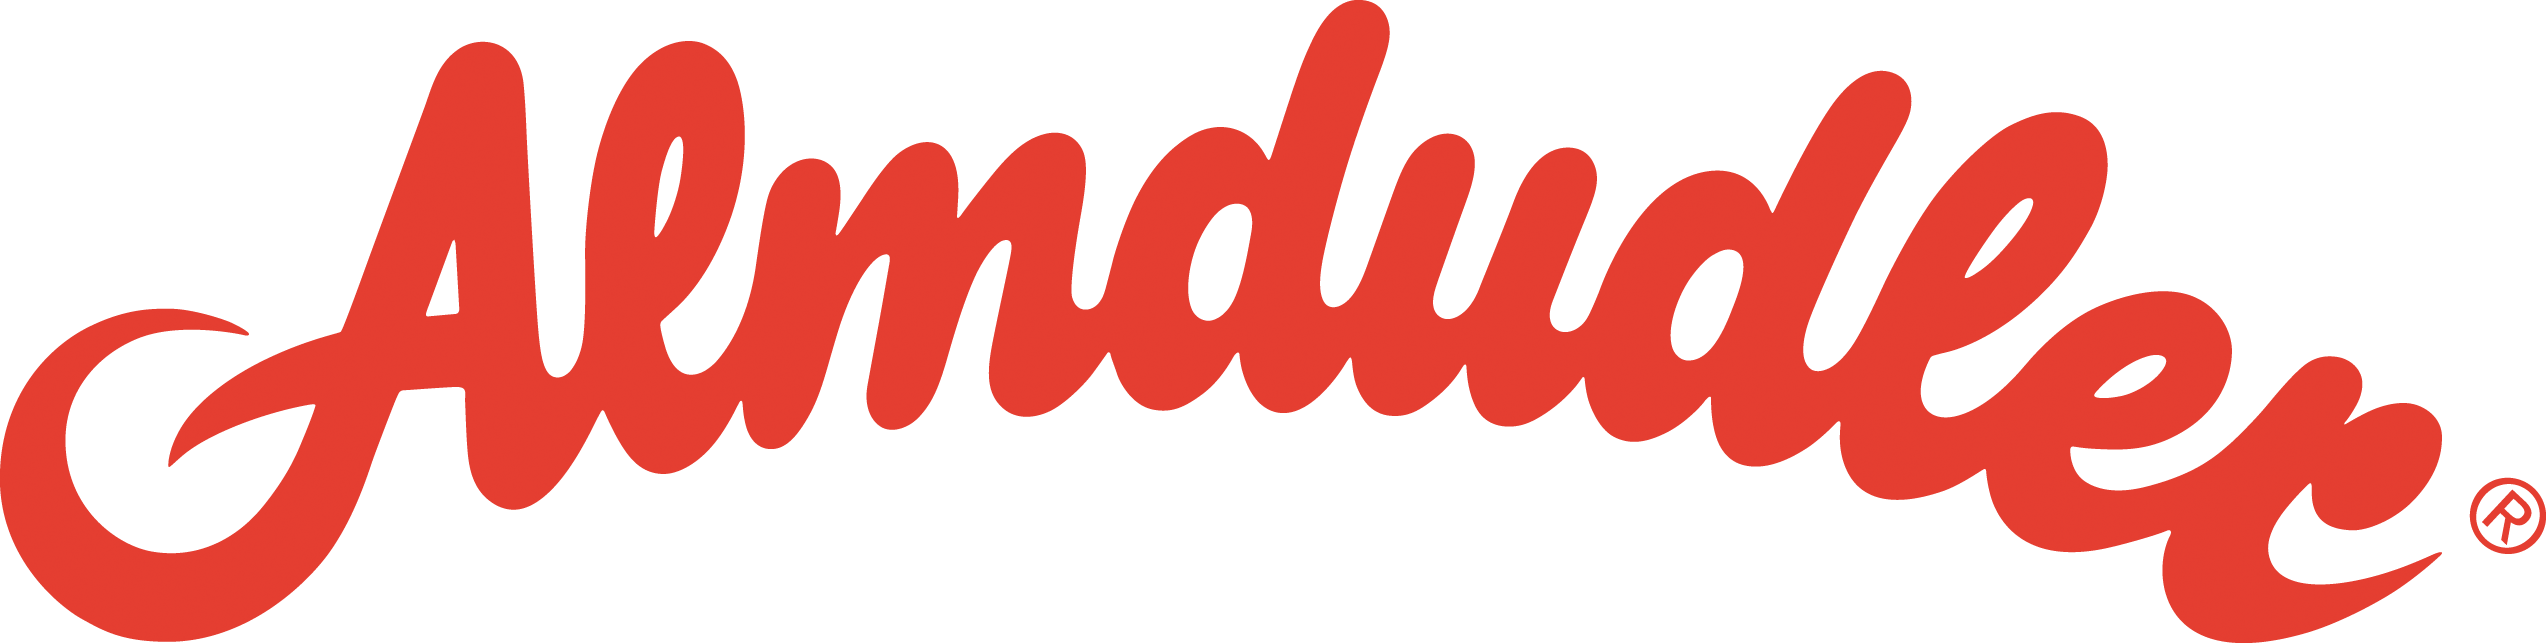 Almdudler Logo